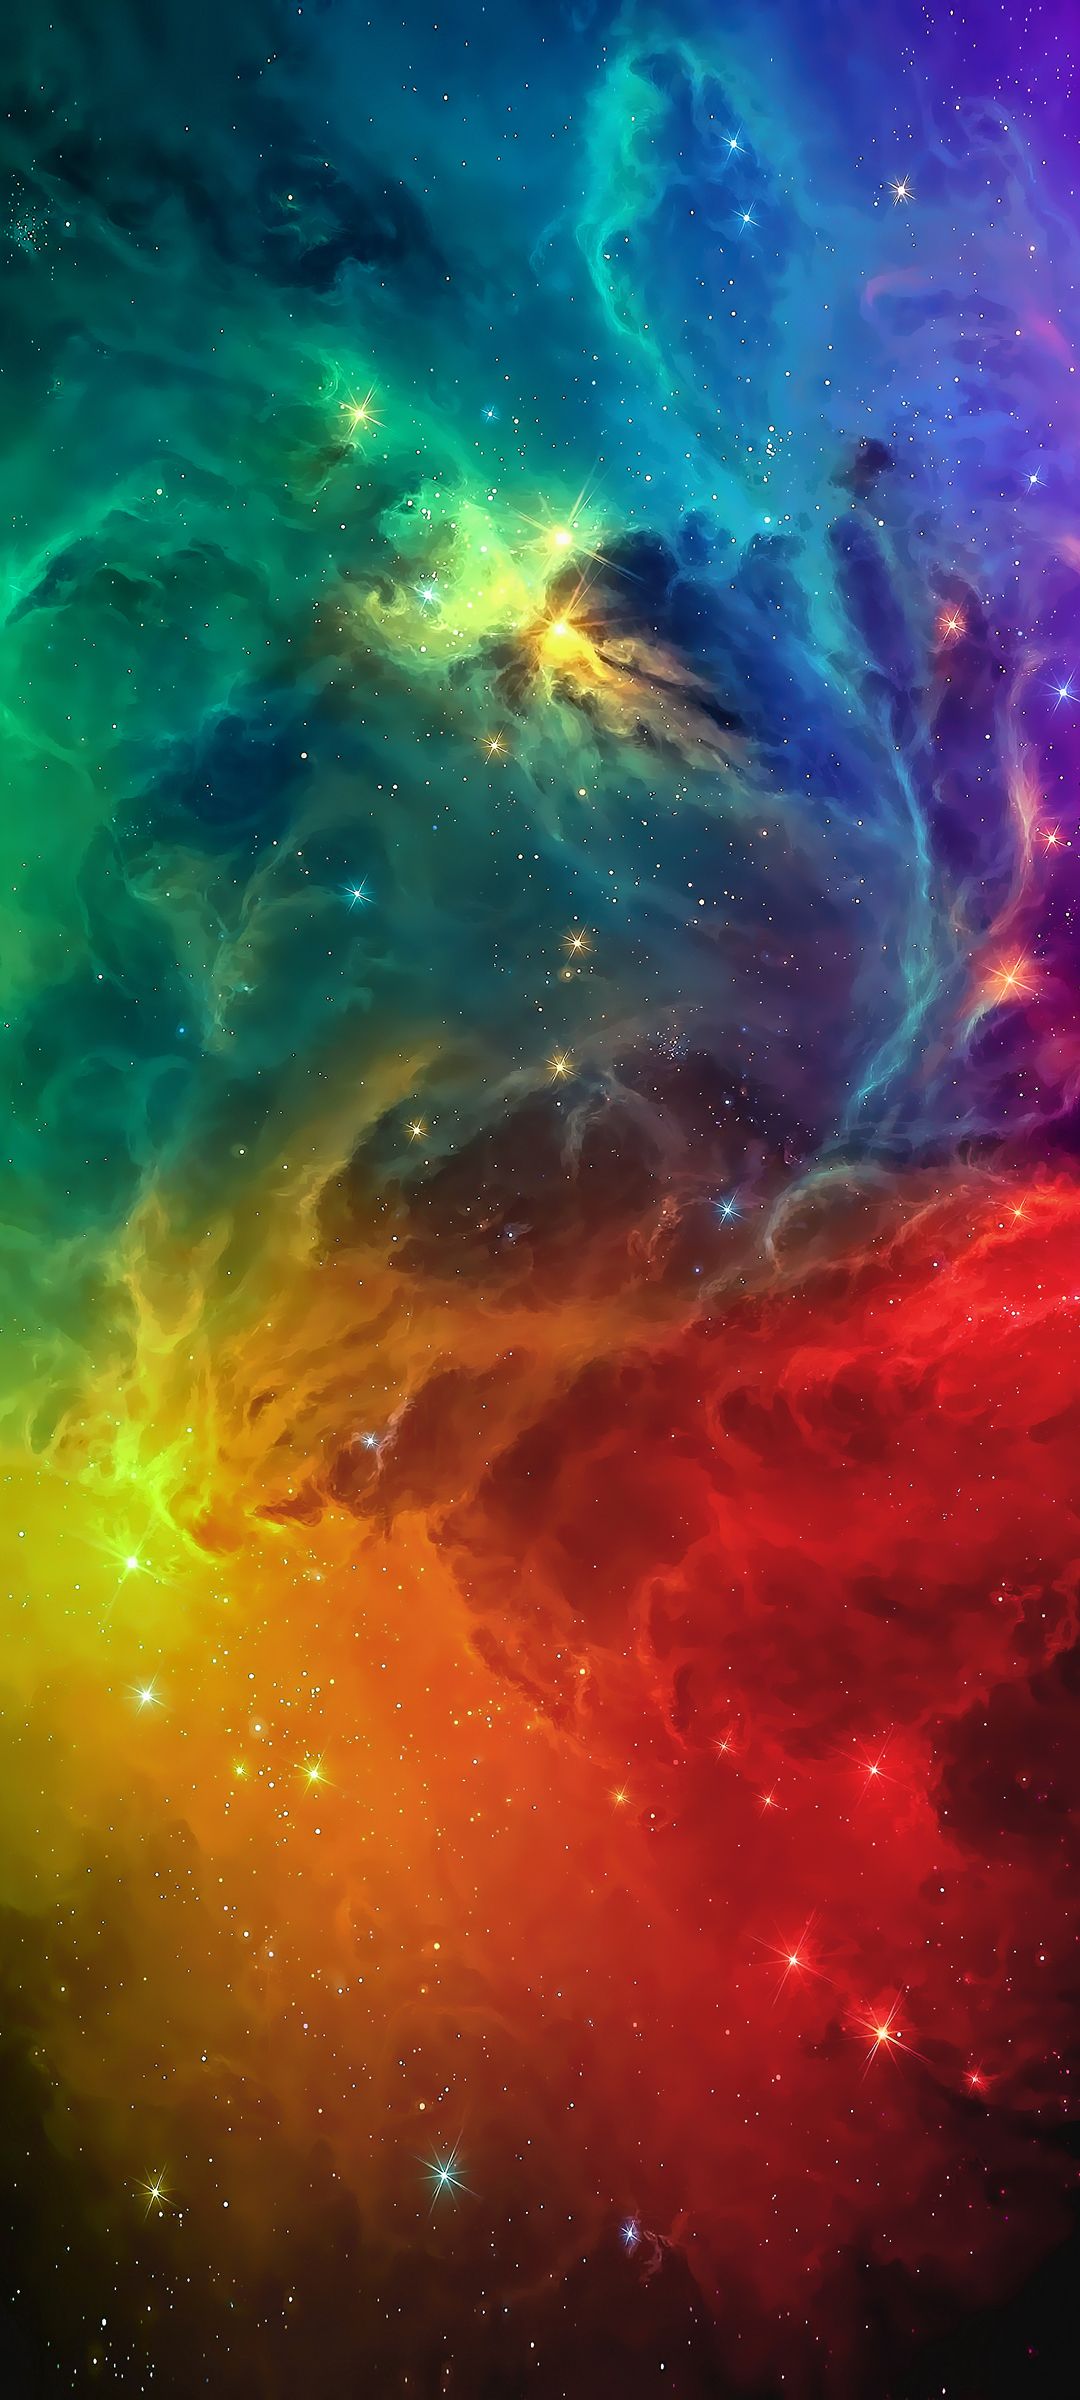 浩瀚宇宙太空星云静谧神秘高清手机壁纸